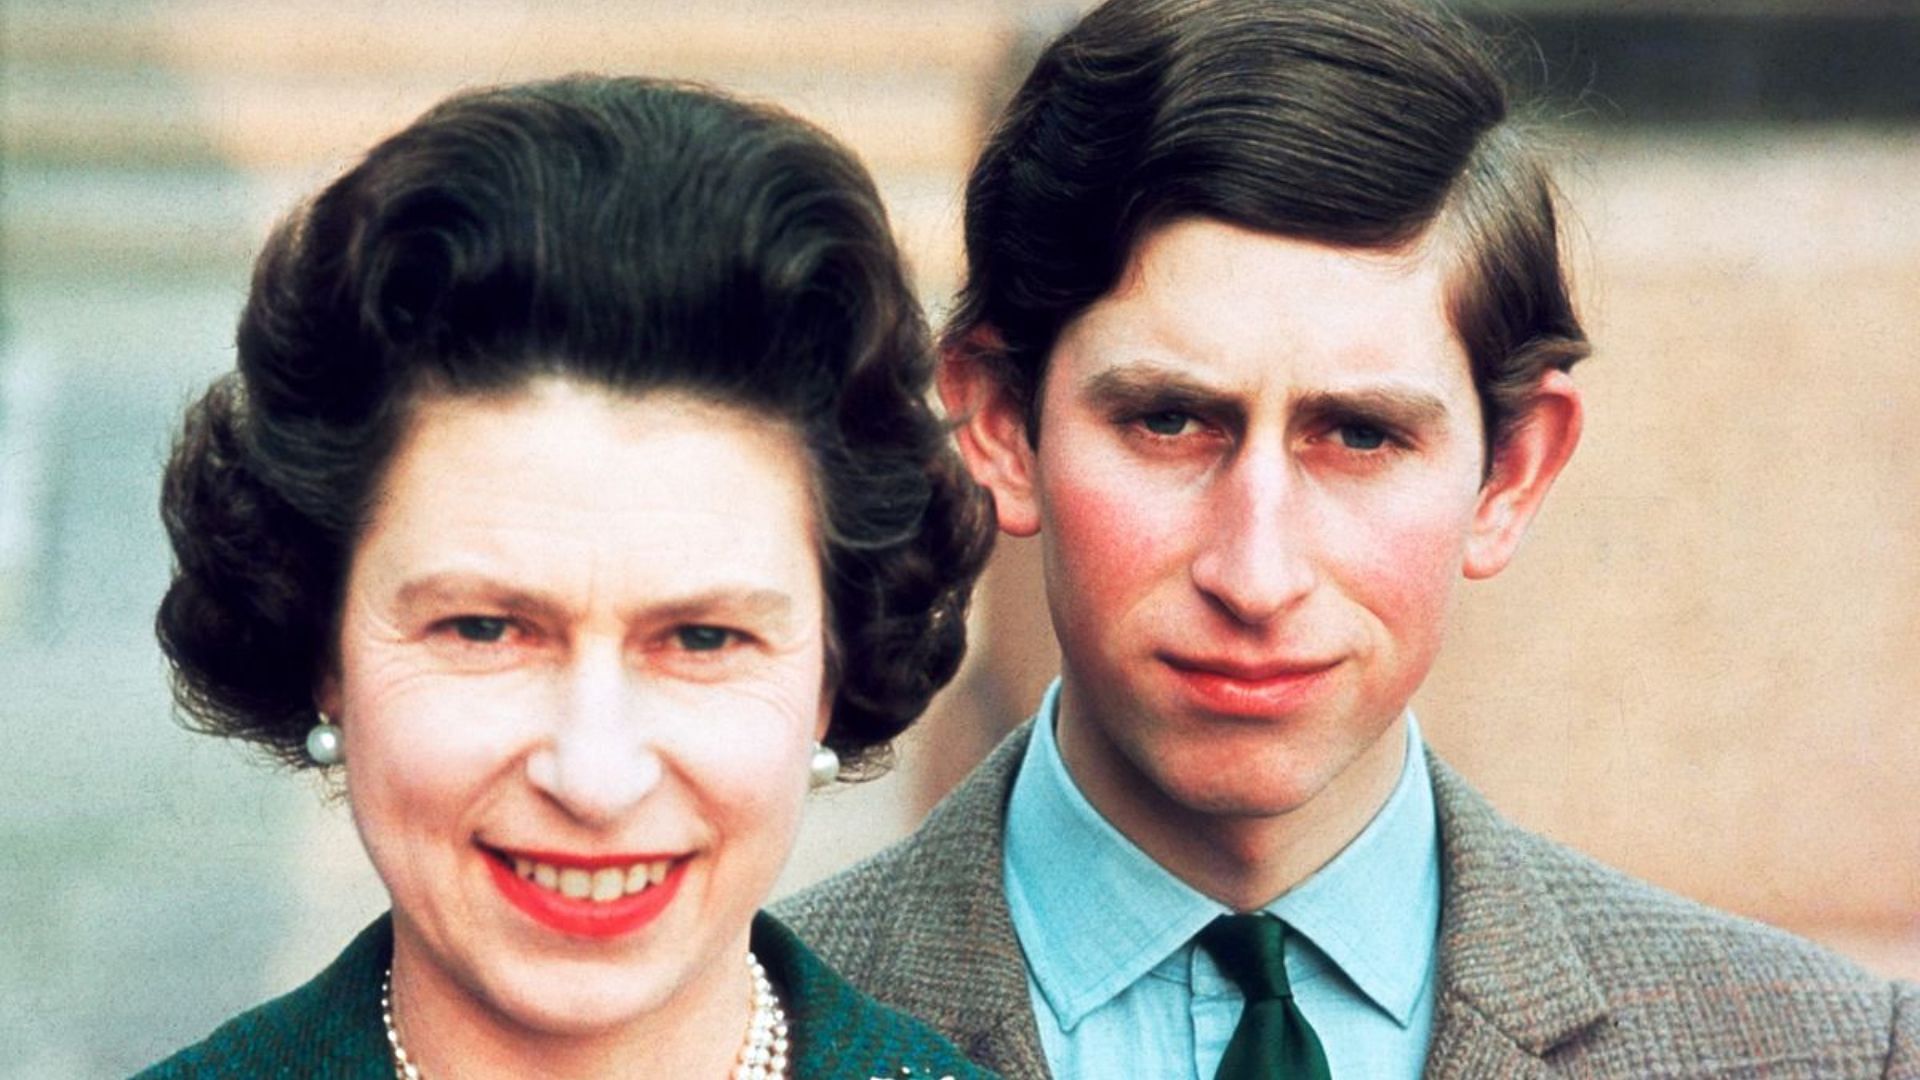 Queen Elizabeth II and King Charles III. (Image via Hulton Deutsch//Getty Images)